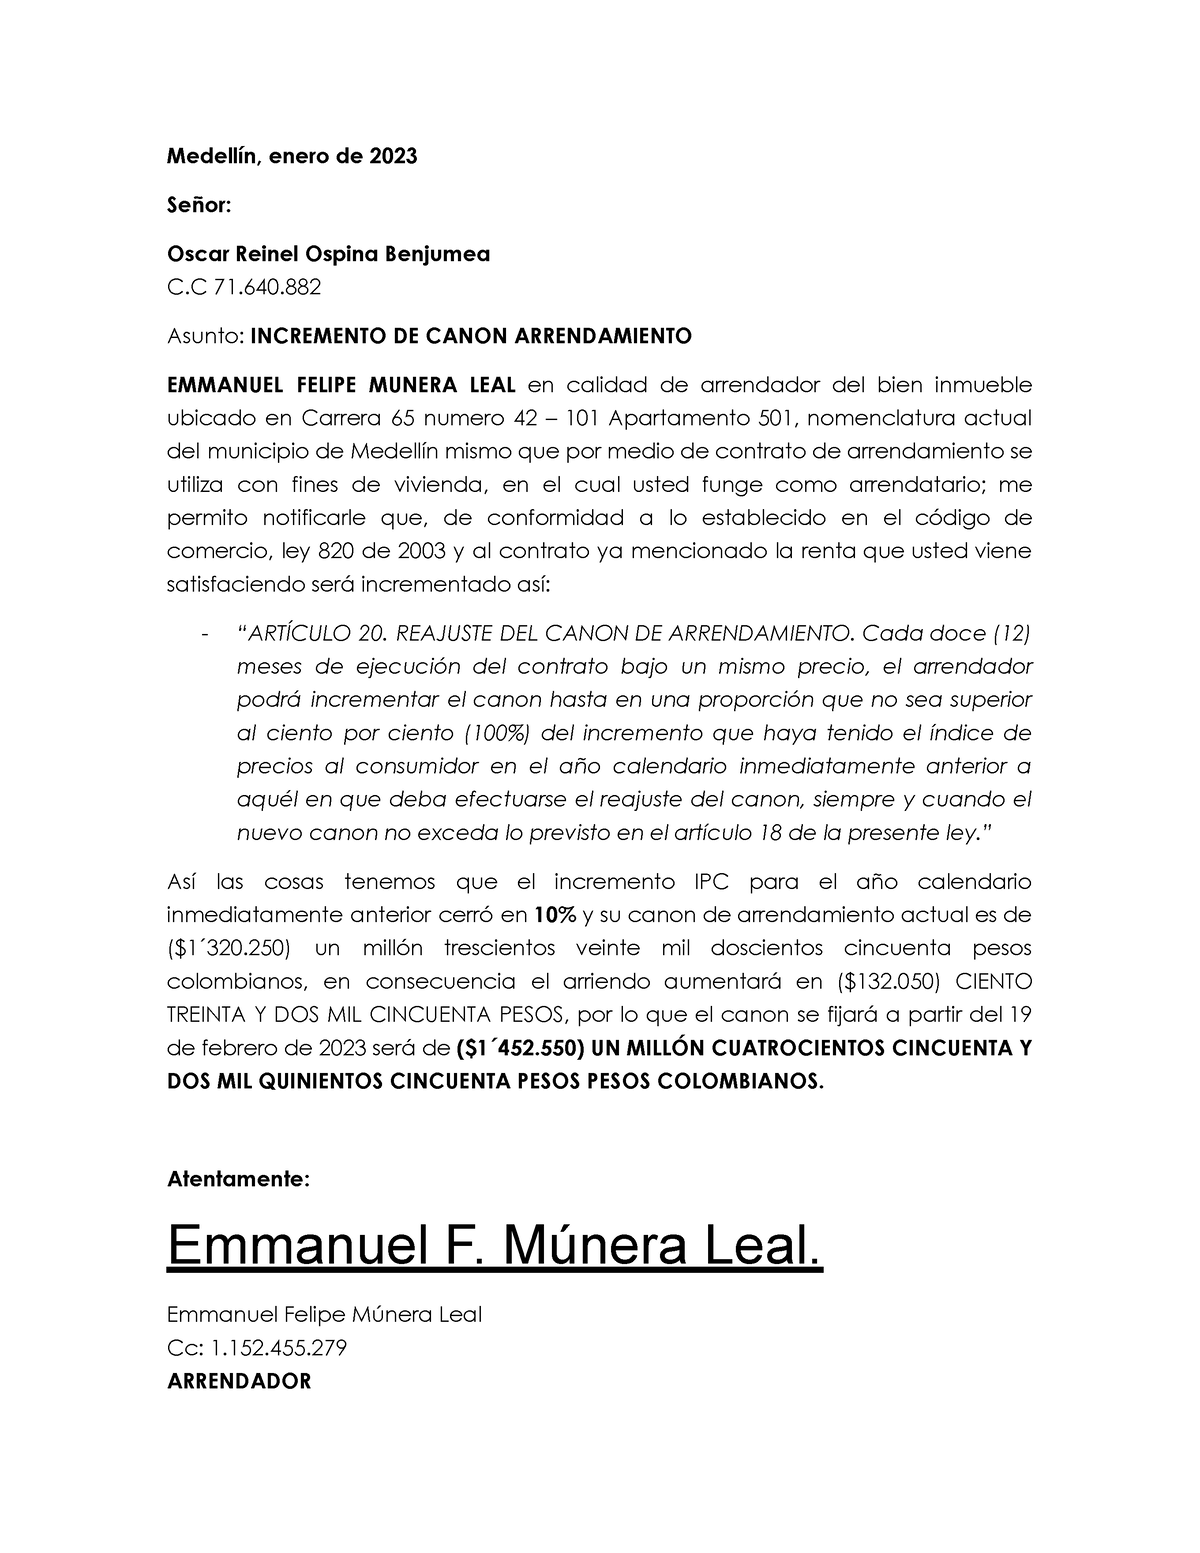 Carta Incremento Canon Arrendamiento 2023 Medellín, enero de 2023